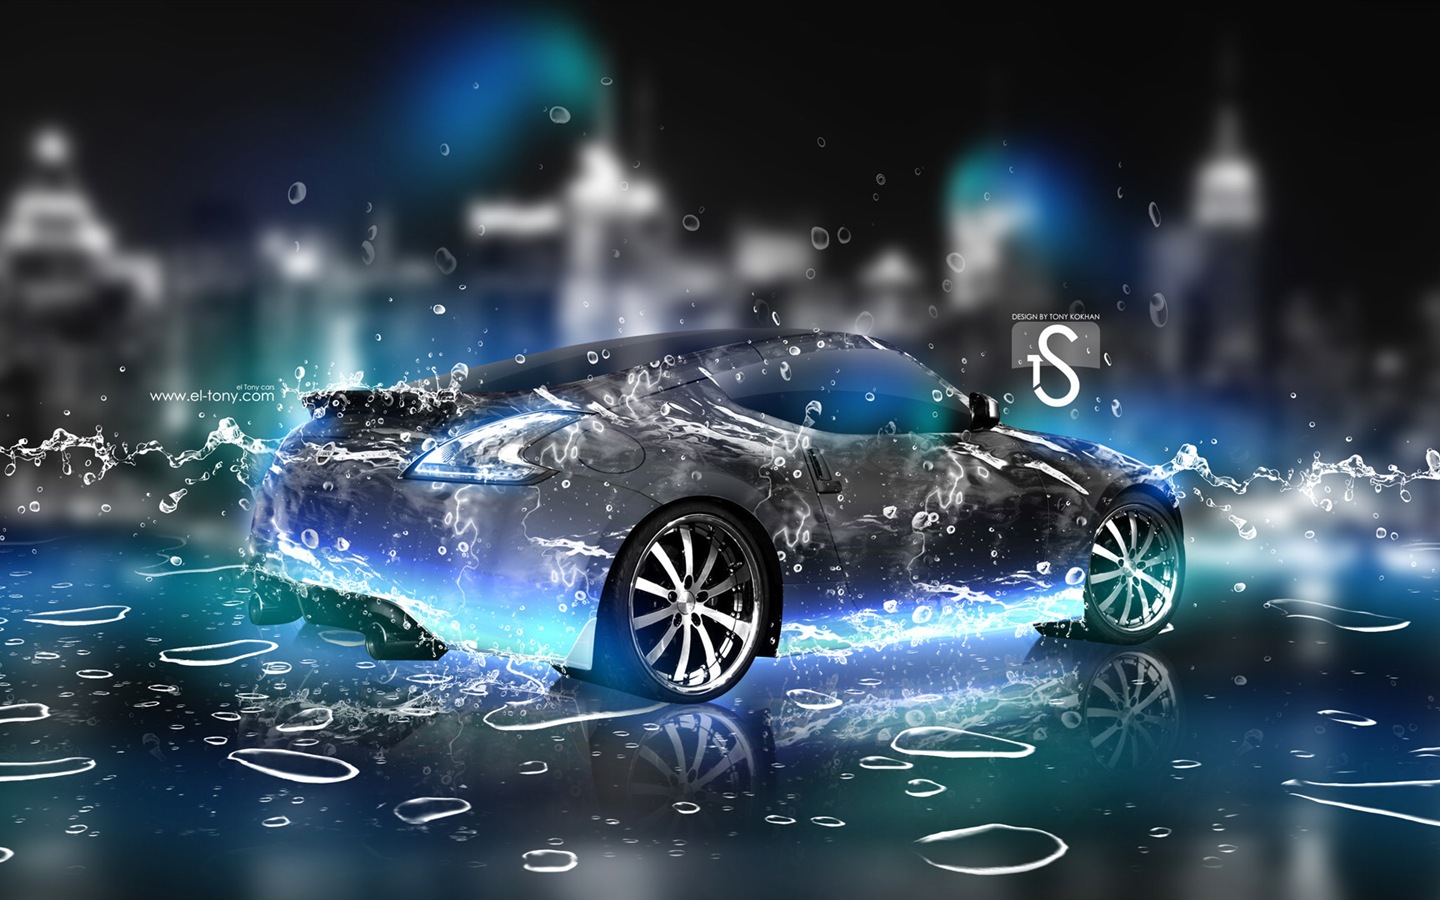 Les gouttes d'eau splash, beau fond d'écran de conception créative de voiture #23 - 1440x900